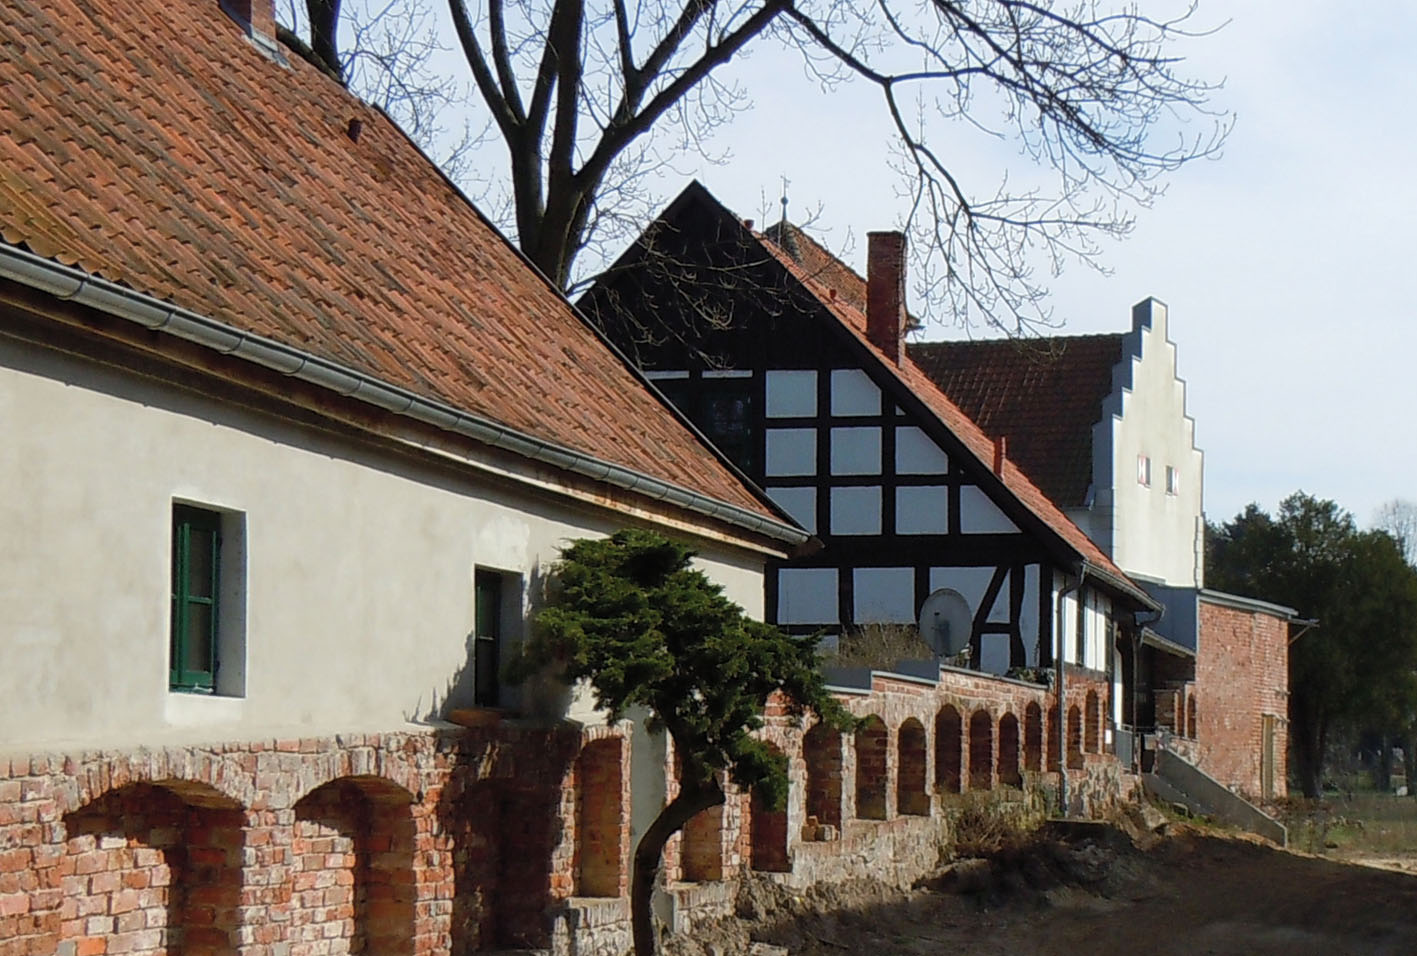 Eine Stadt mit großer Geschichte - die Mauern der alten Burg / Bild: Margret Dannemann-Jarchow